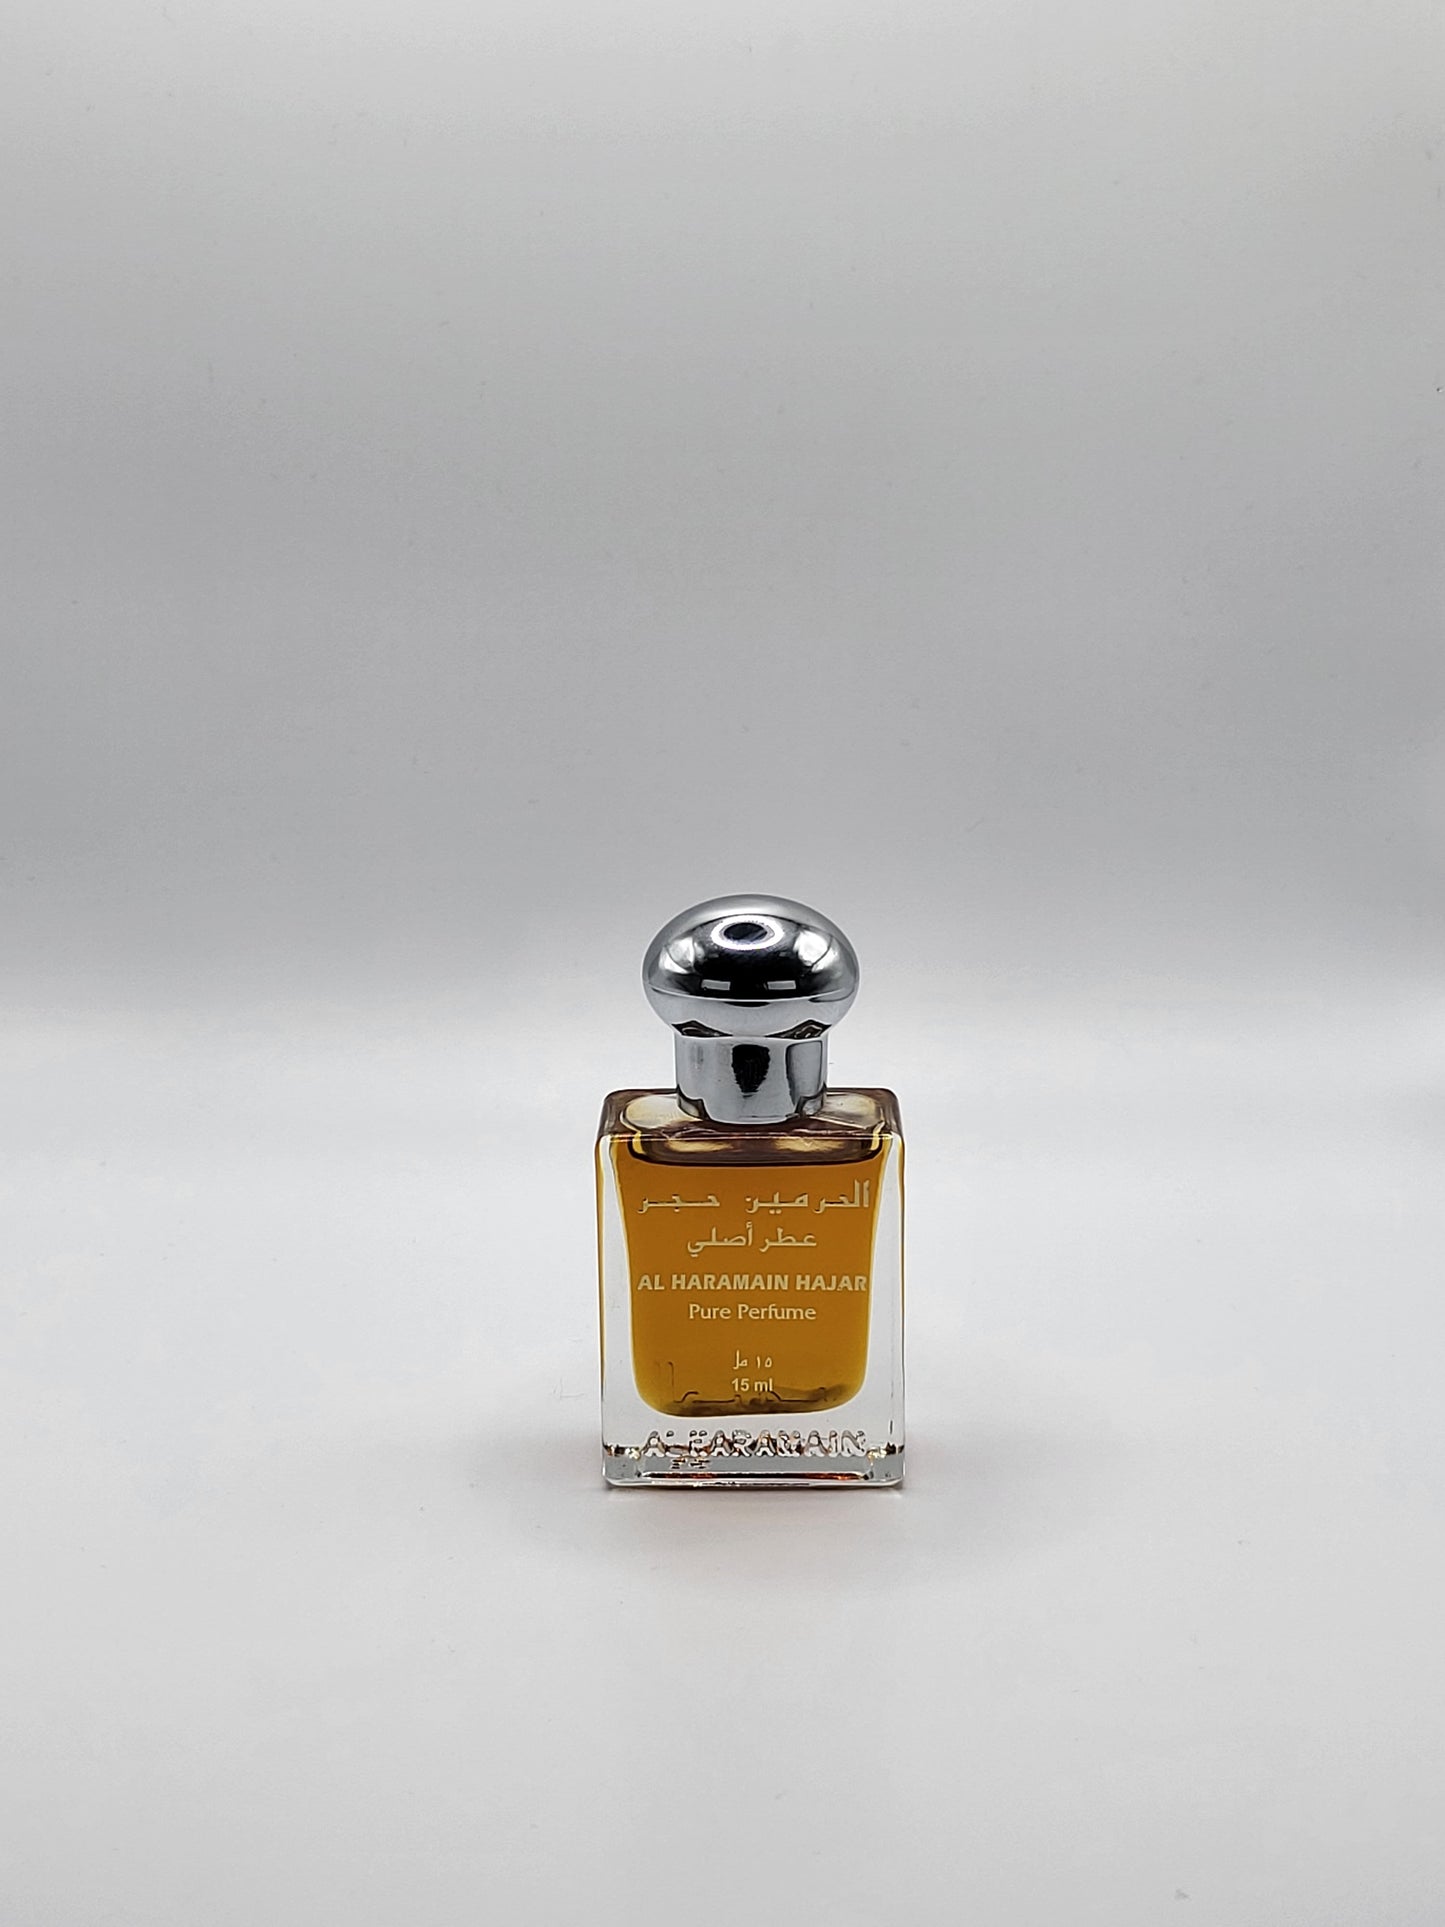 Hajar 15ml Concentrate Perfume Oil